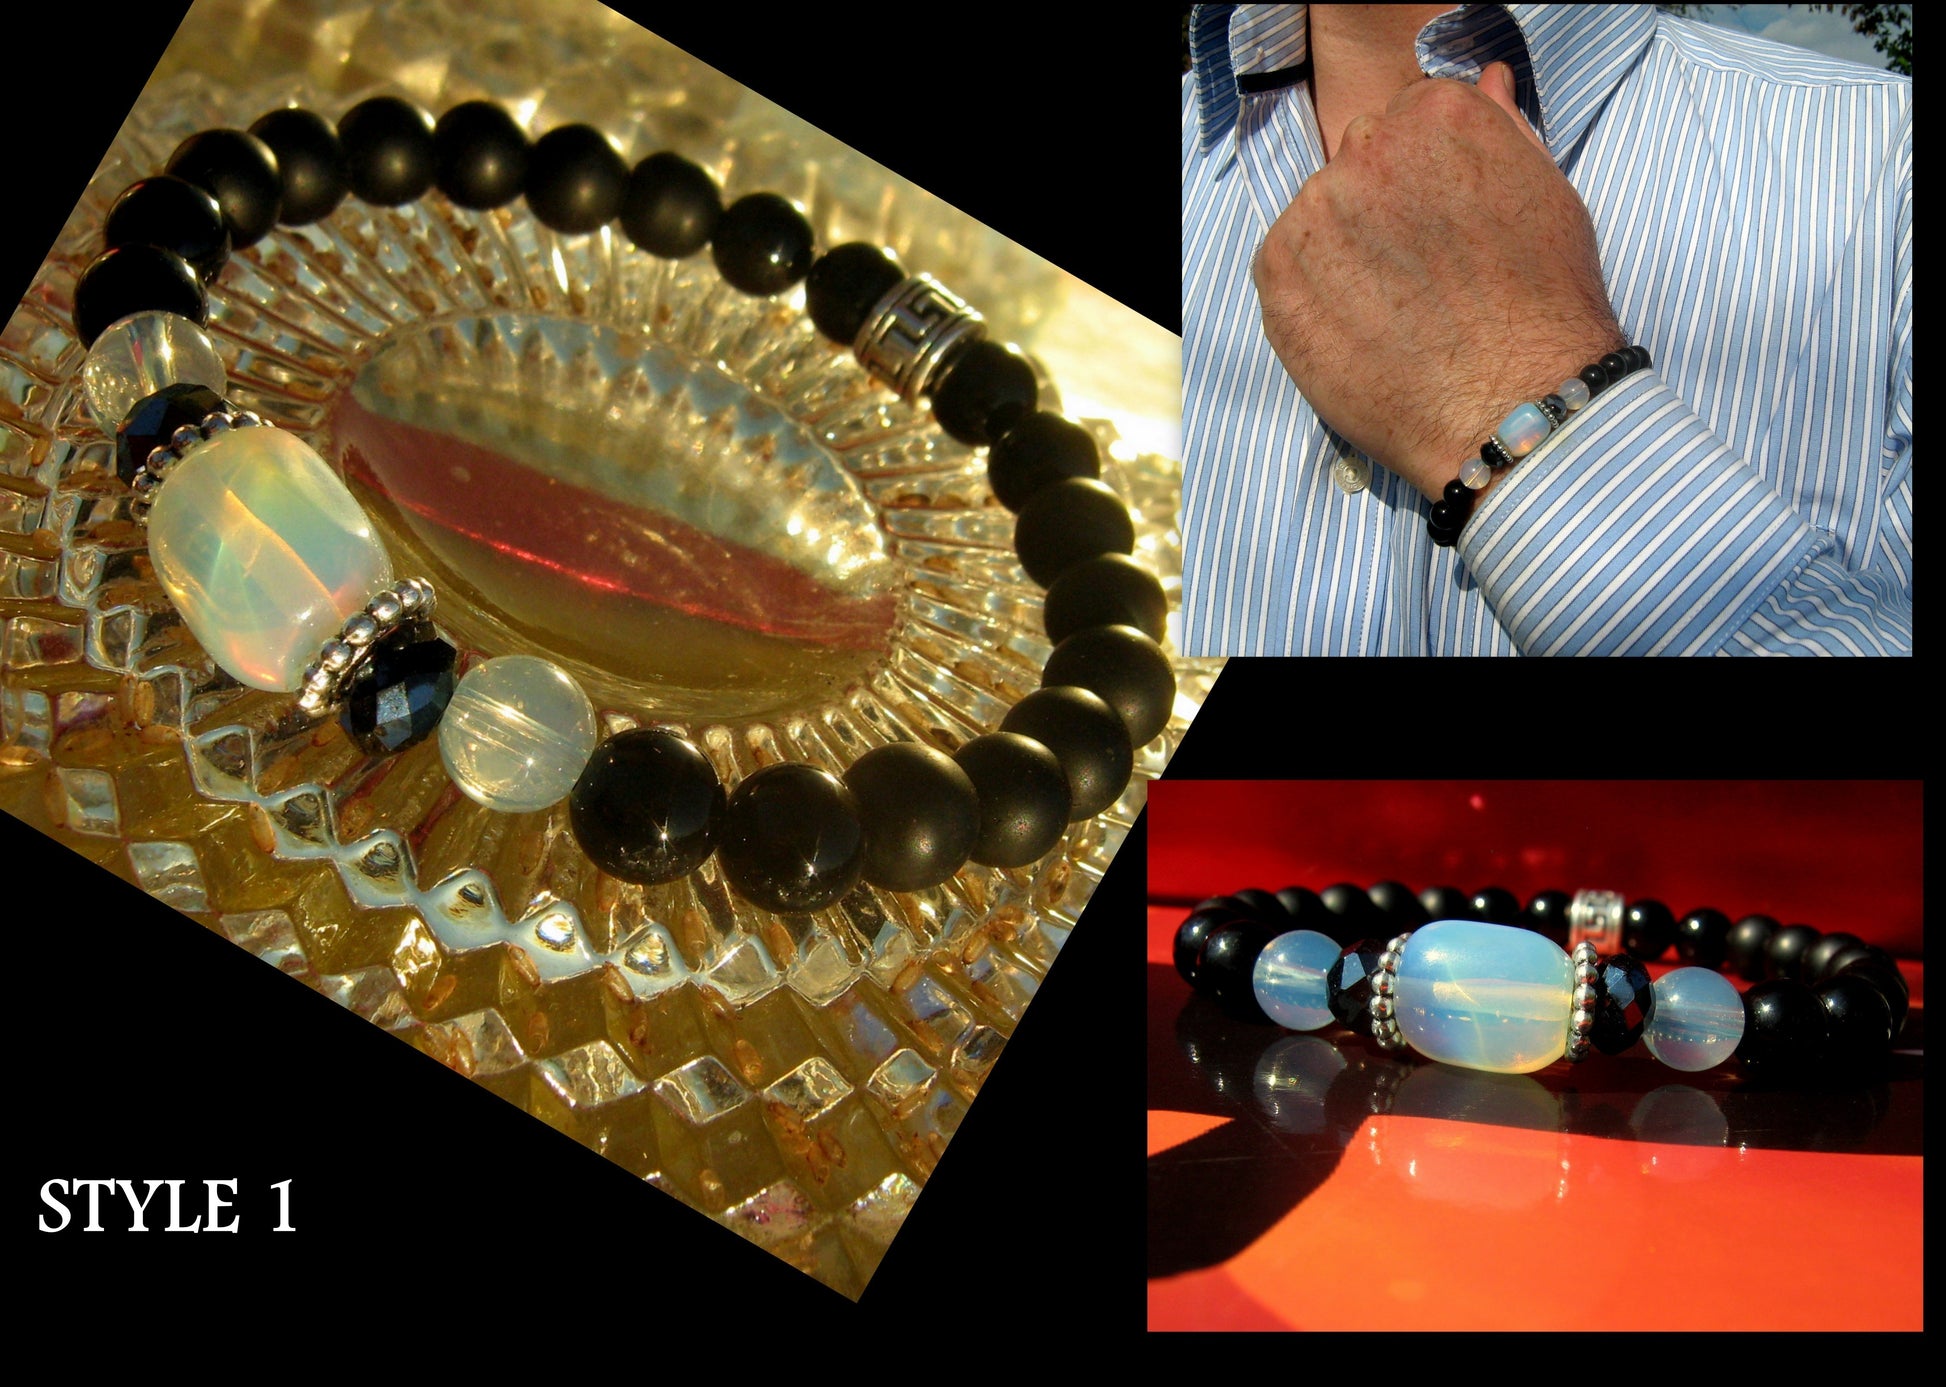 CAMELYS MAGIC 4 MEN - Men stone Opal Bracelet Tourmaline Hematite Onyx Moonstone, Handmade bracelet men gift